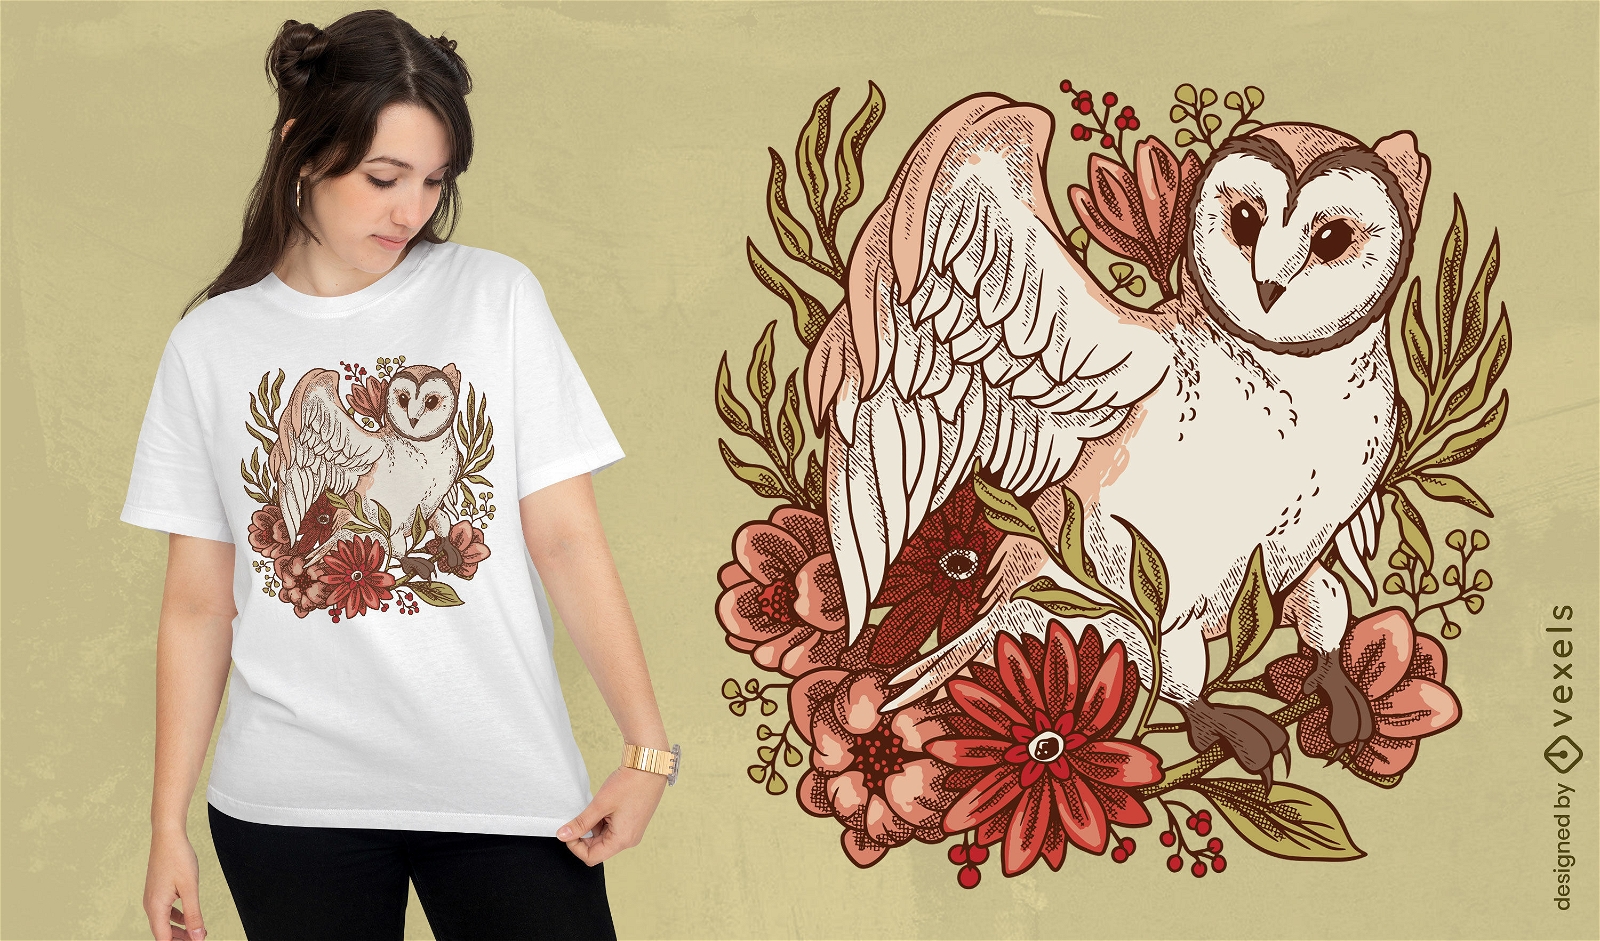 Pink owl floral t-shirt design